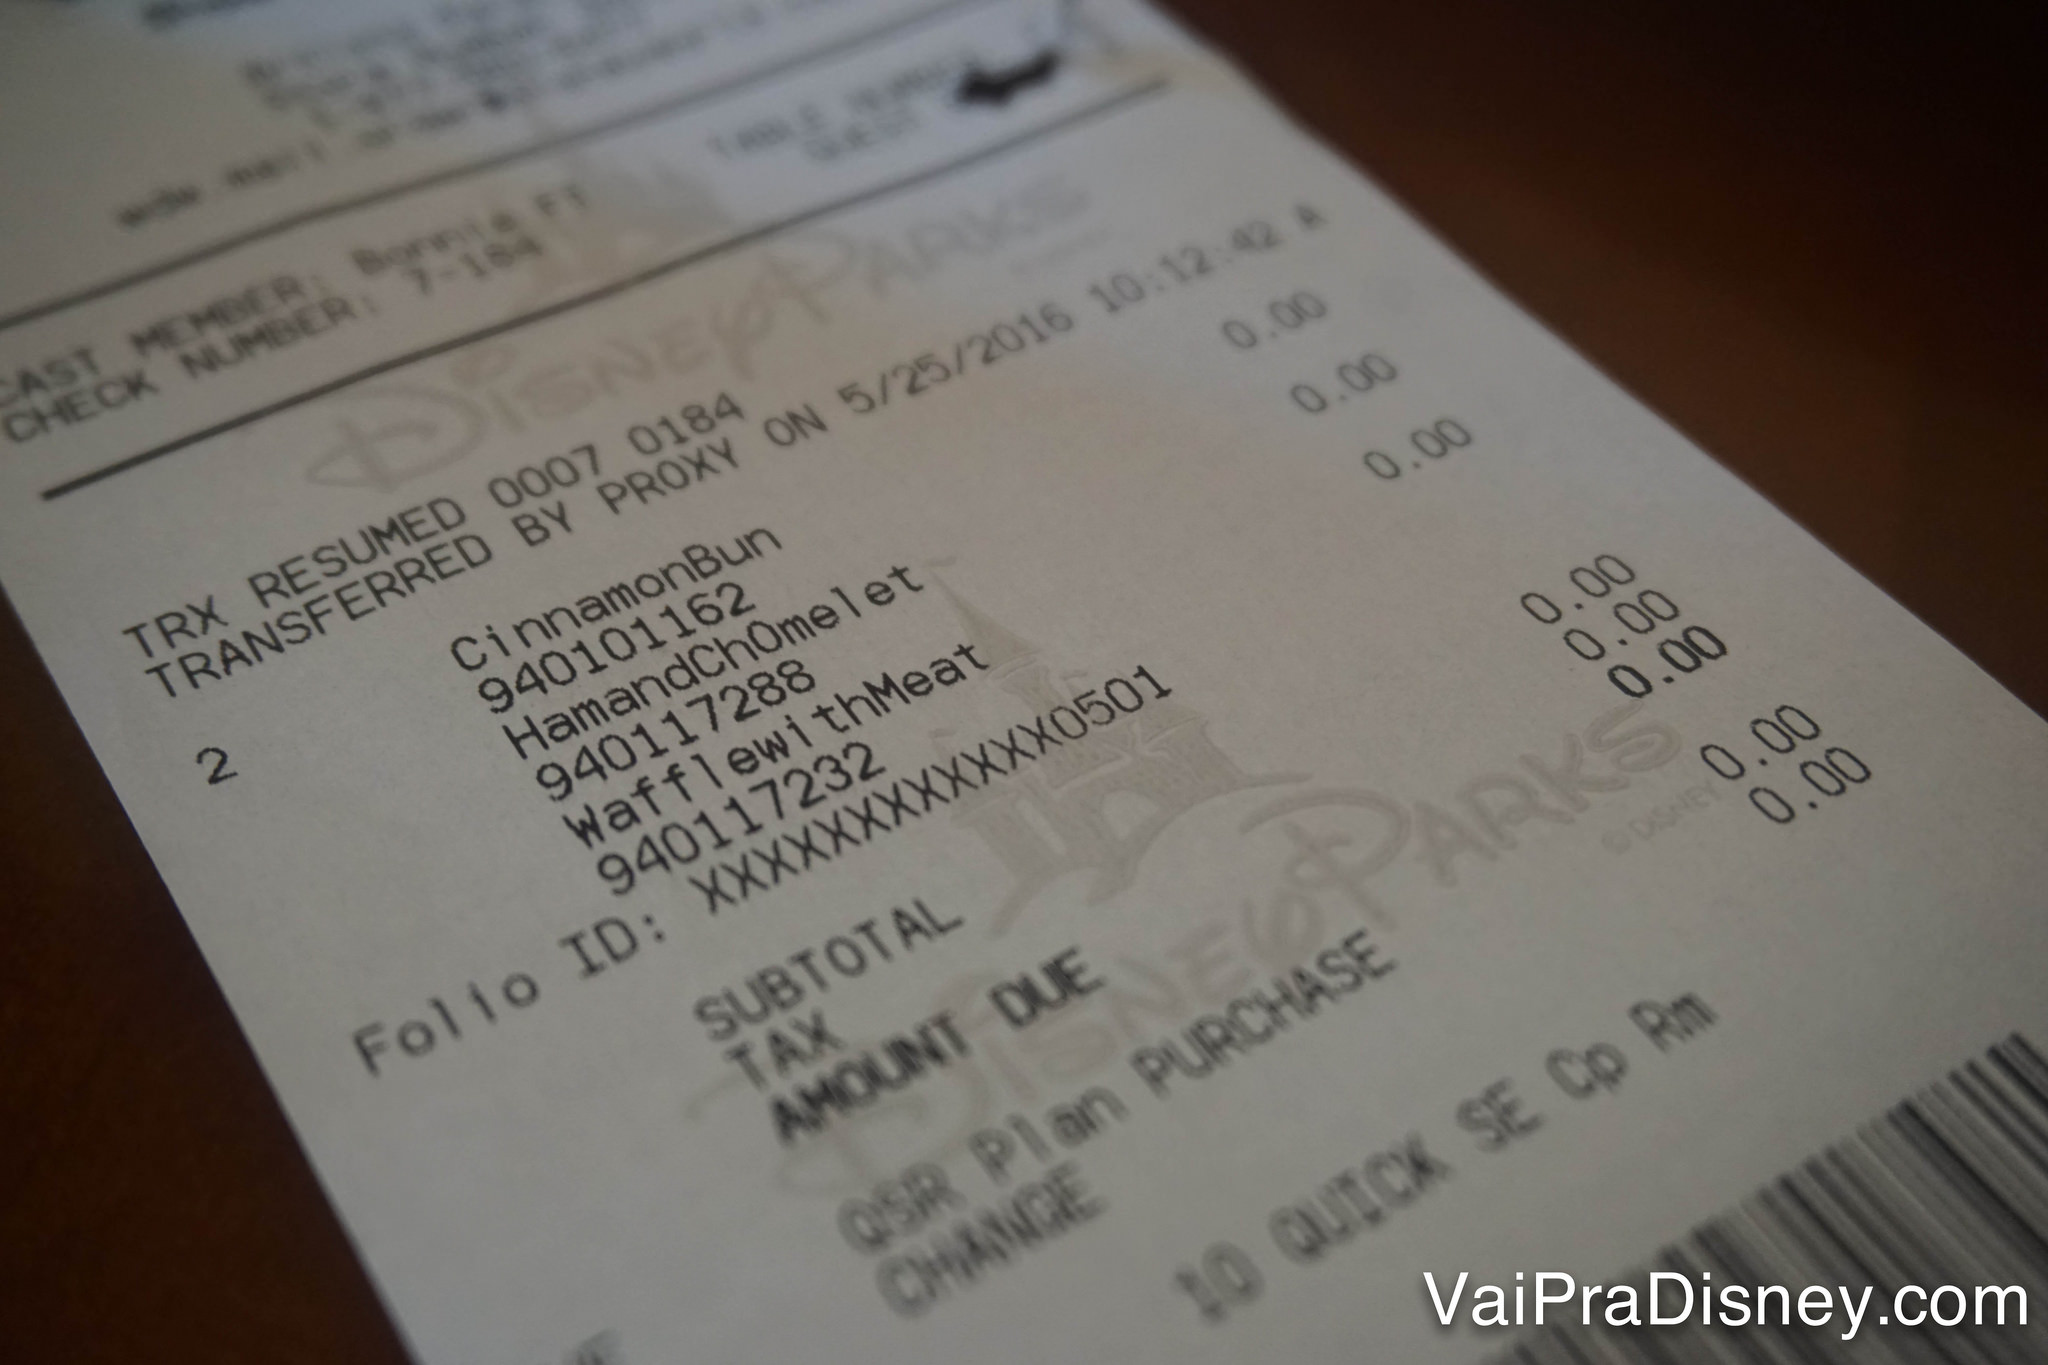 Foto da conta em um restaurante da Disney dando 0 dólares por causa do Dining Plan 